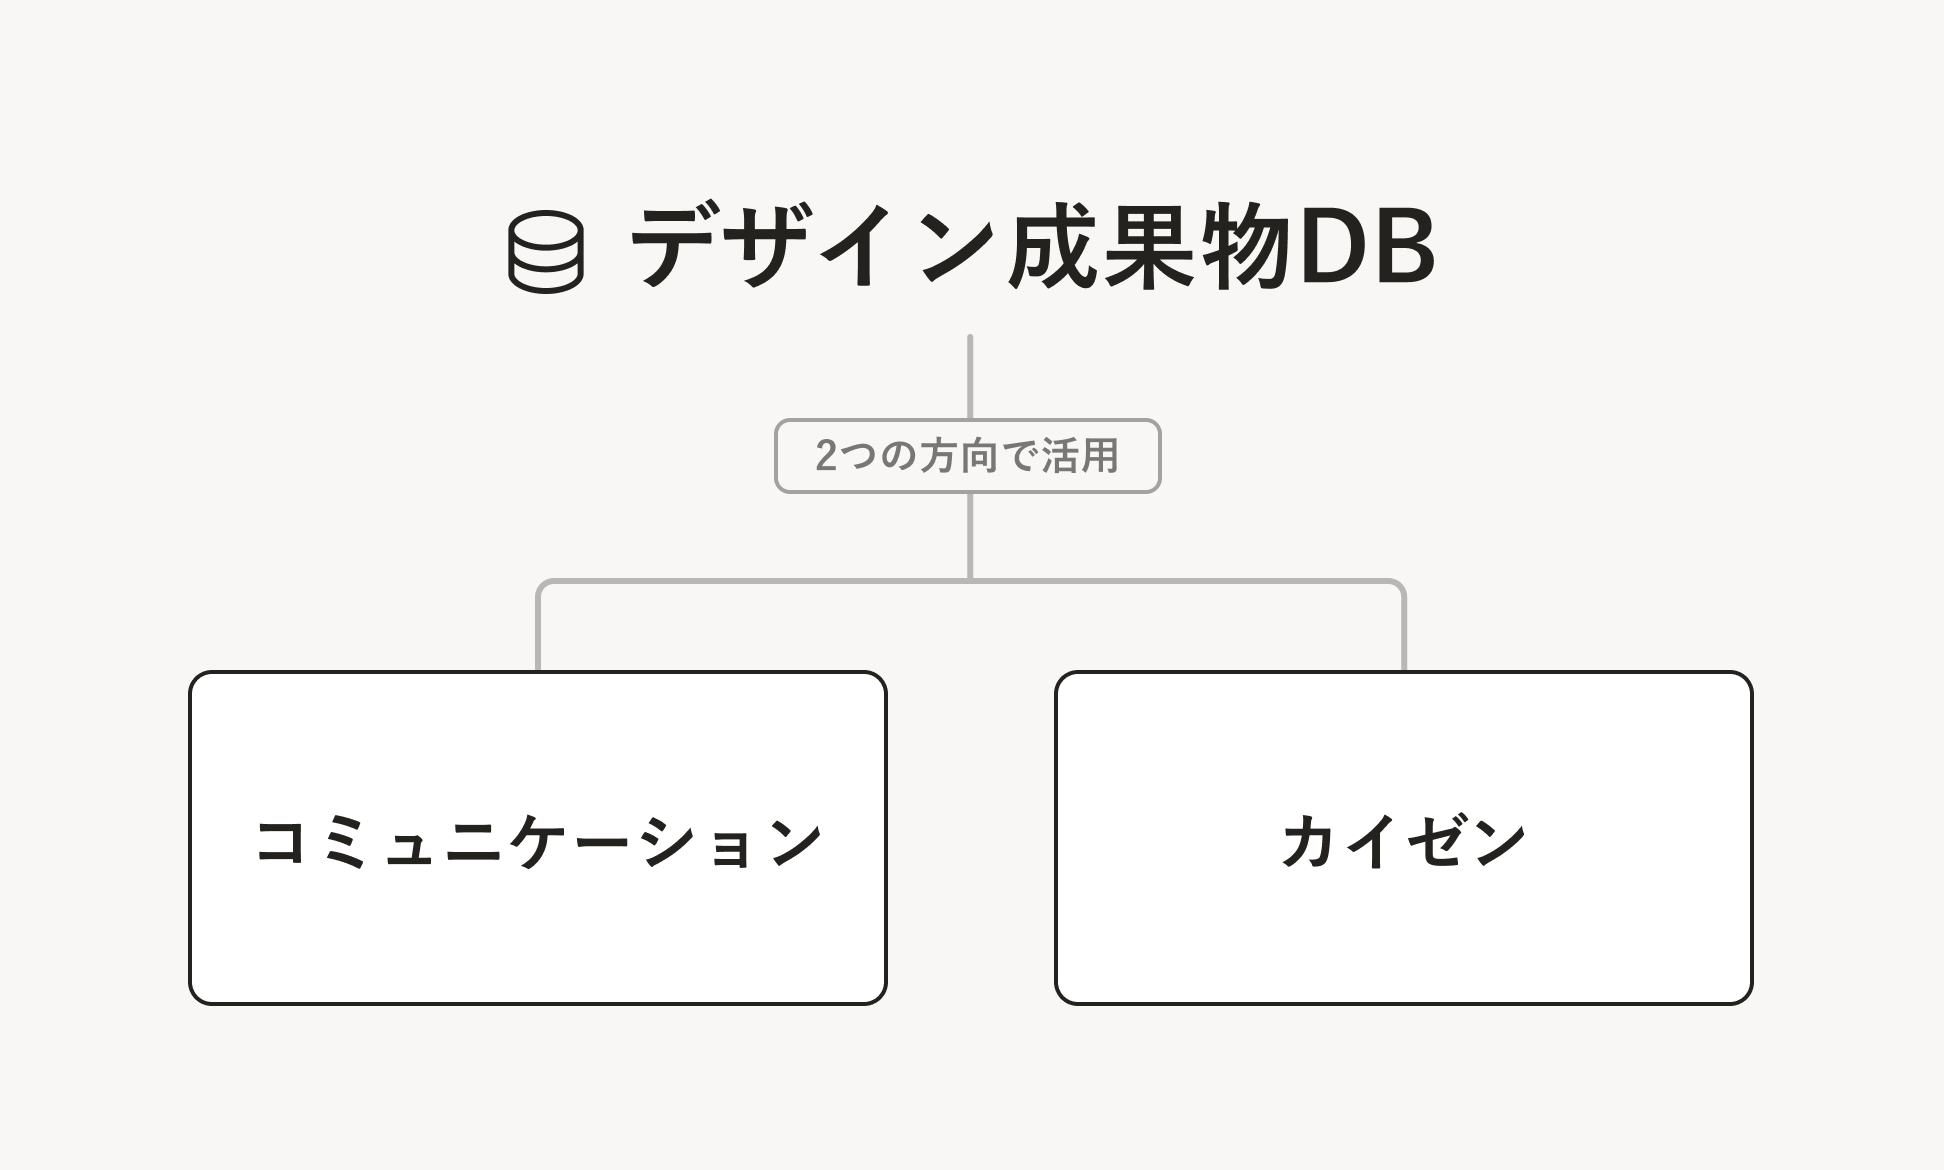 デザイン成果物DBに対して、「2つの方向で活用」と書かれて矢印が伸びており、矢印の先には、「コミュニケーション」「カイゼン」の2つのワードが配置されている。